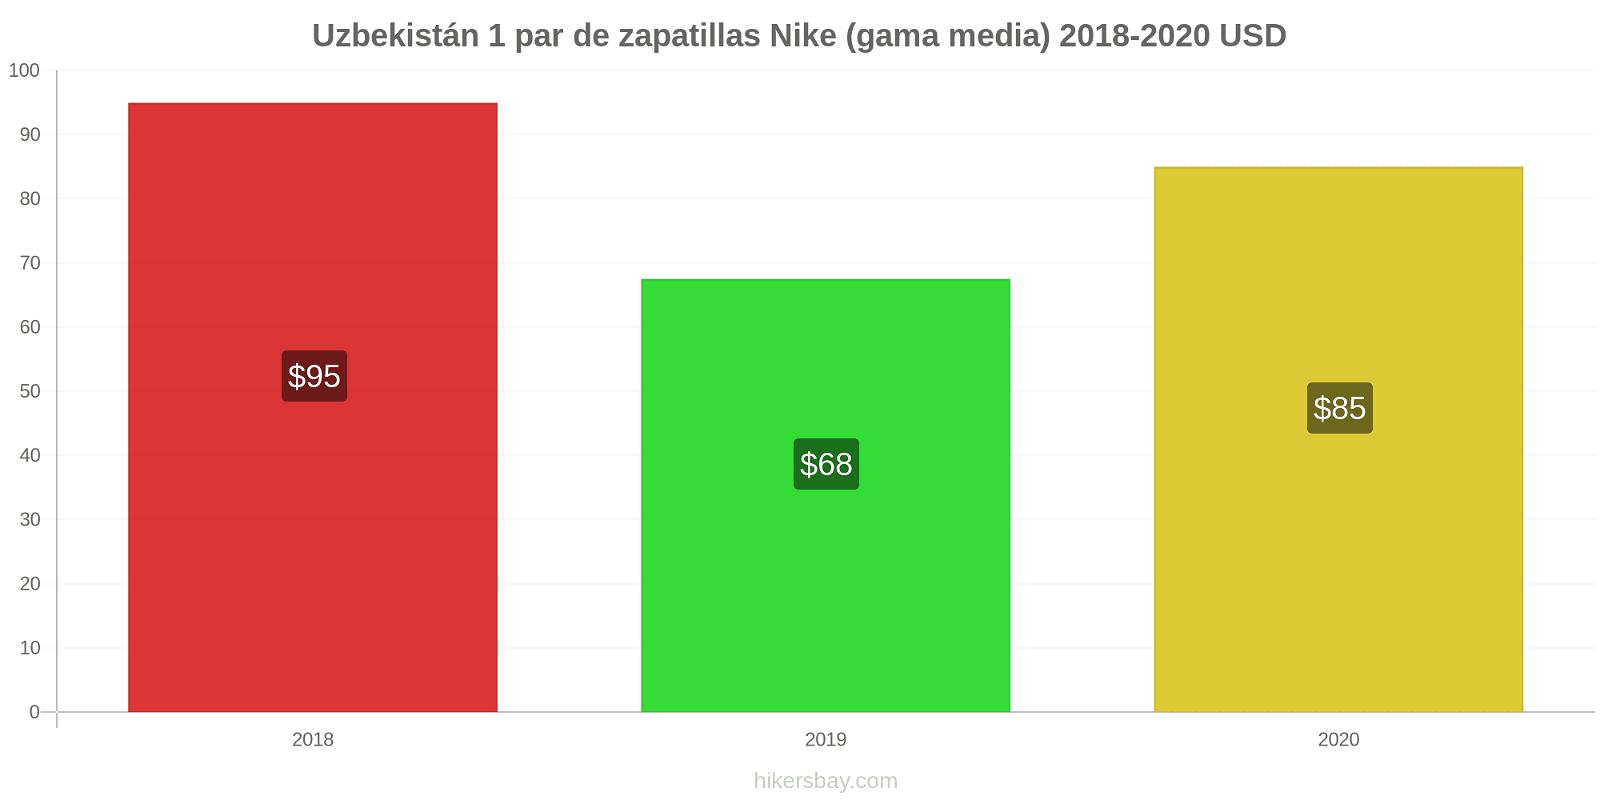 Uzbekistán cambios de precios 1 par de zapatillas Nike (gama media) hikersbay.com